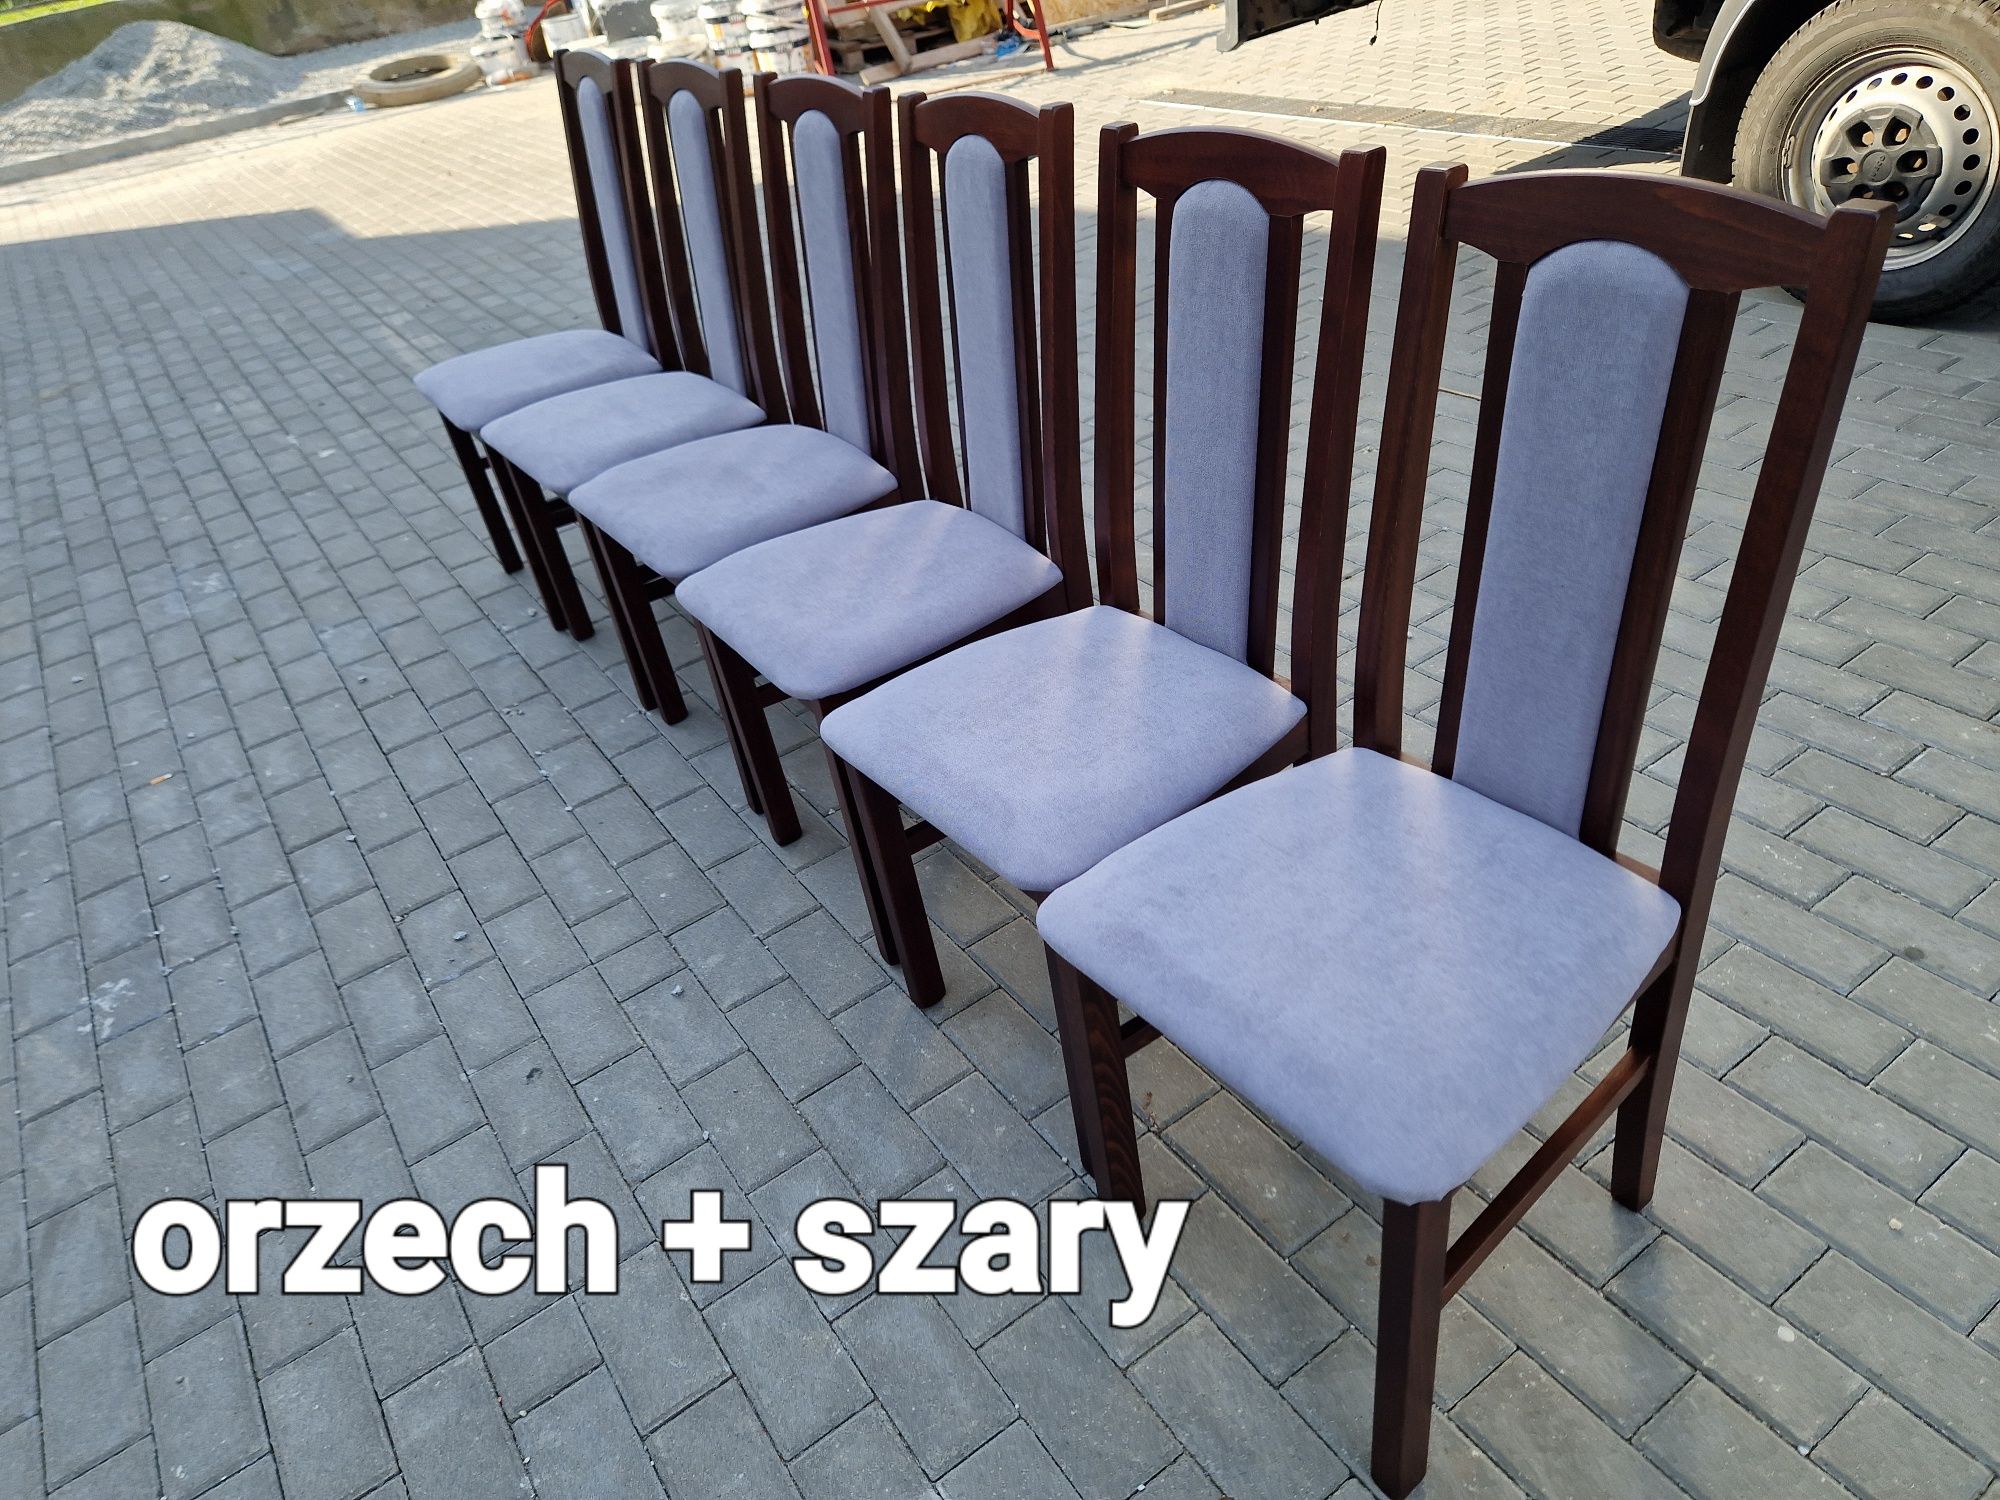 Nowe: Stół 80x140/180 + 6 krzeseł, orzech + szary, dostawa PL